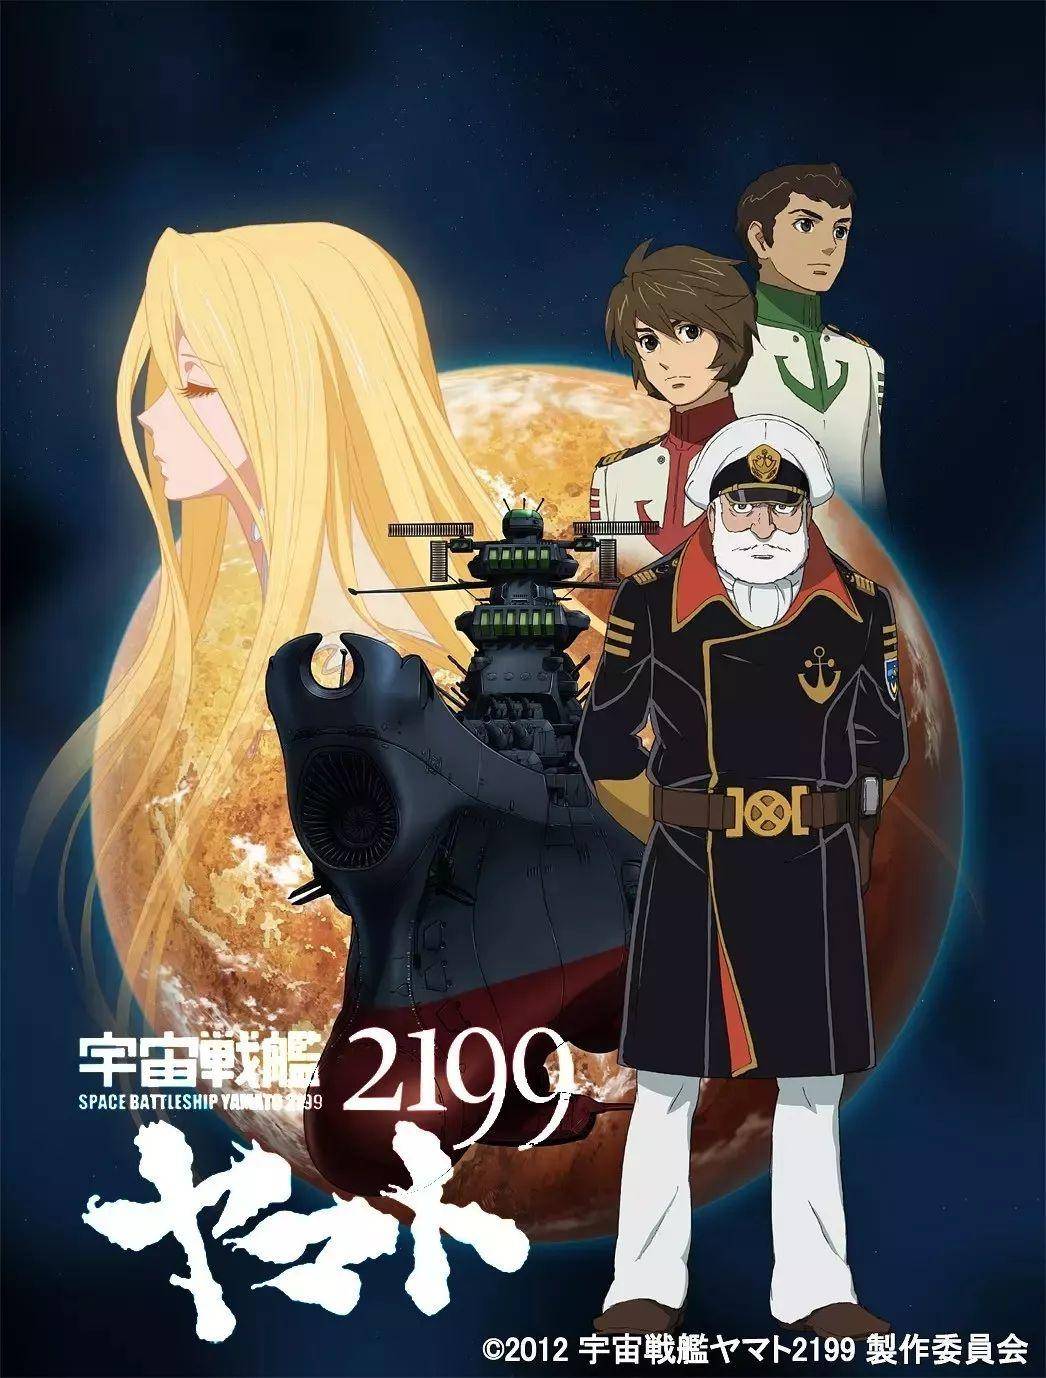 《宇宙战舰大和号2199》引发日本变革的科幻作品，问一艘“破船”如何拯救世界？